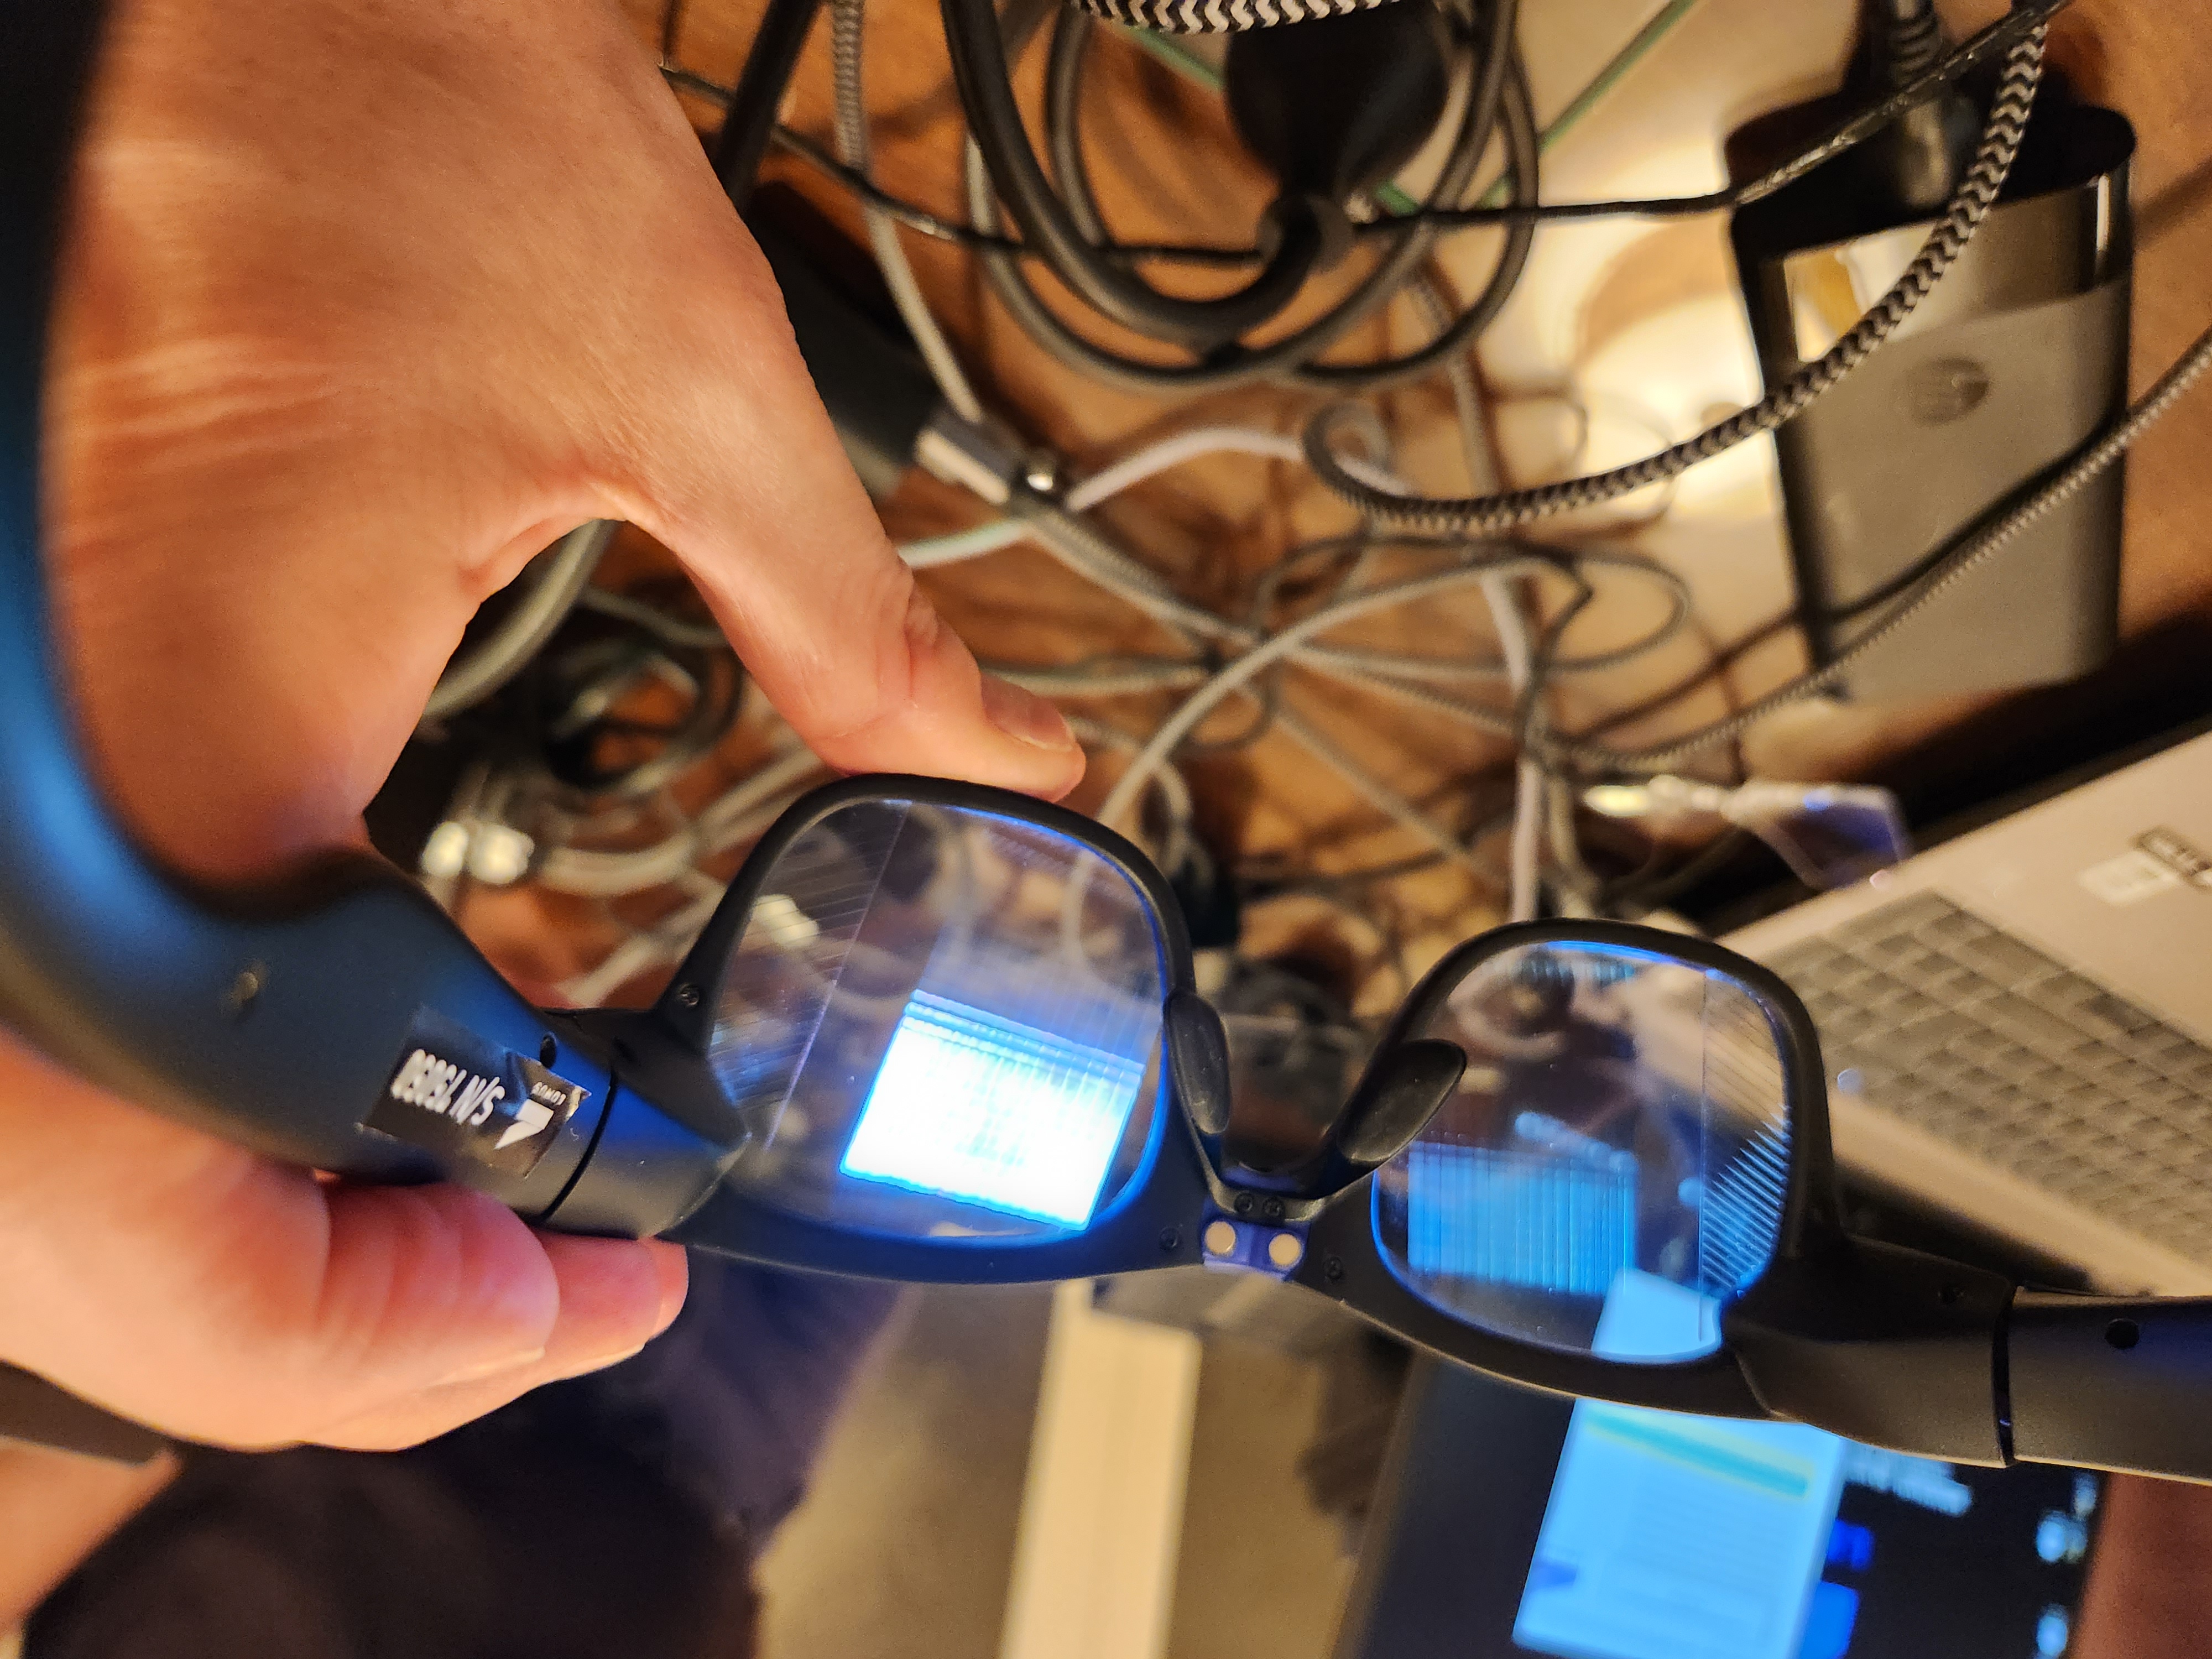 A посмотрите через умные очки Lumus (на очень захламленном столе)